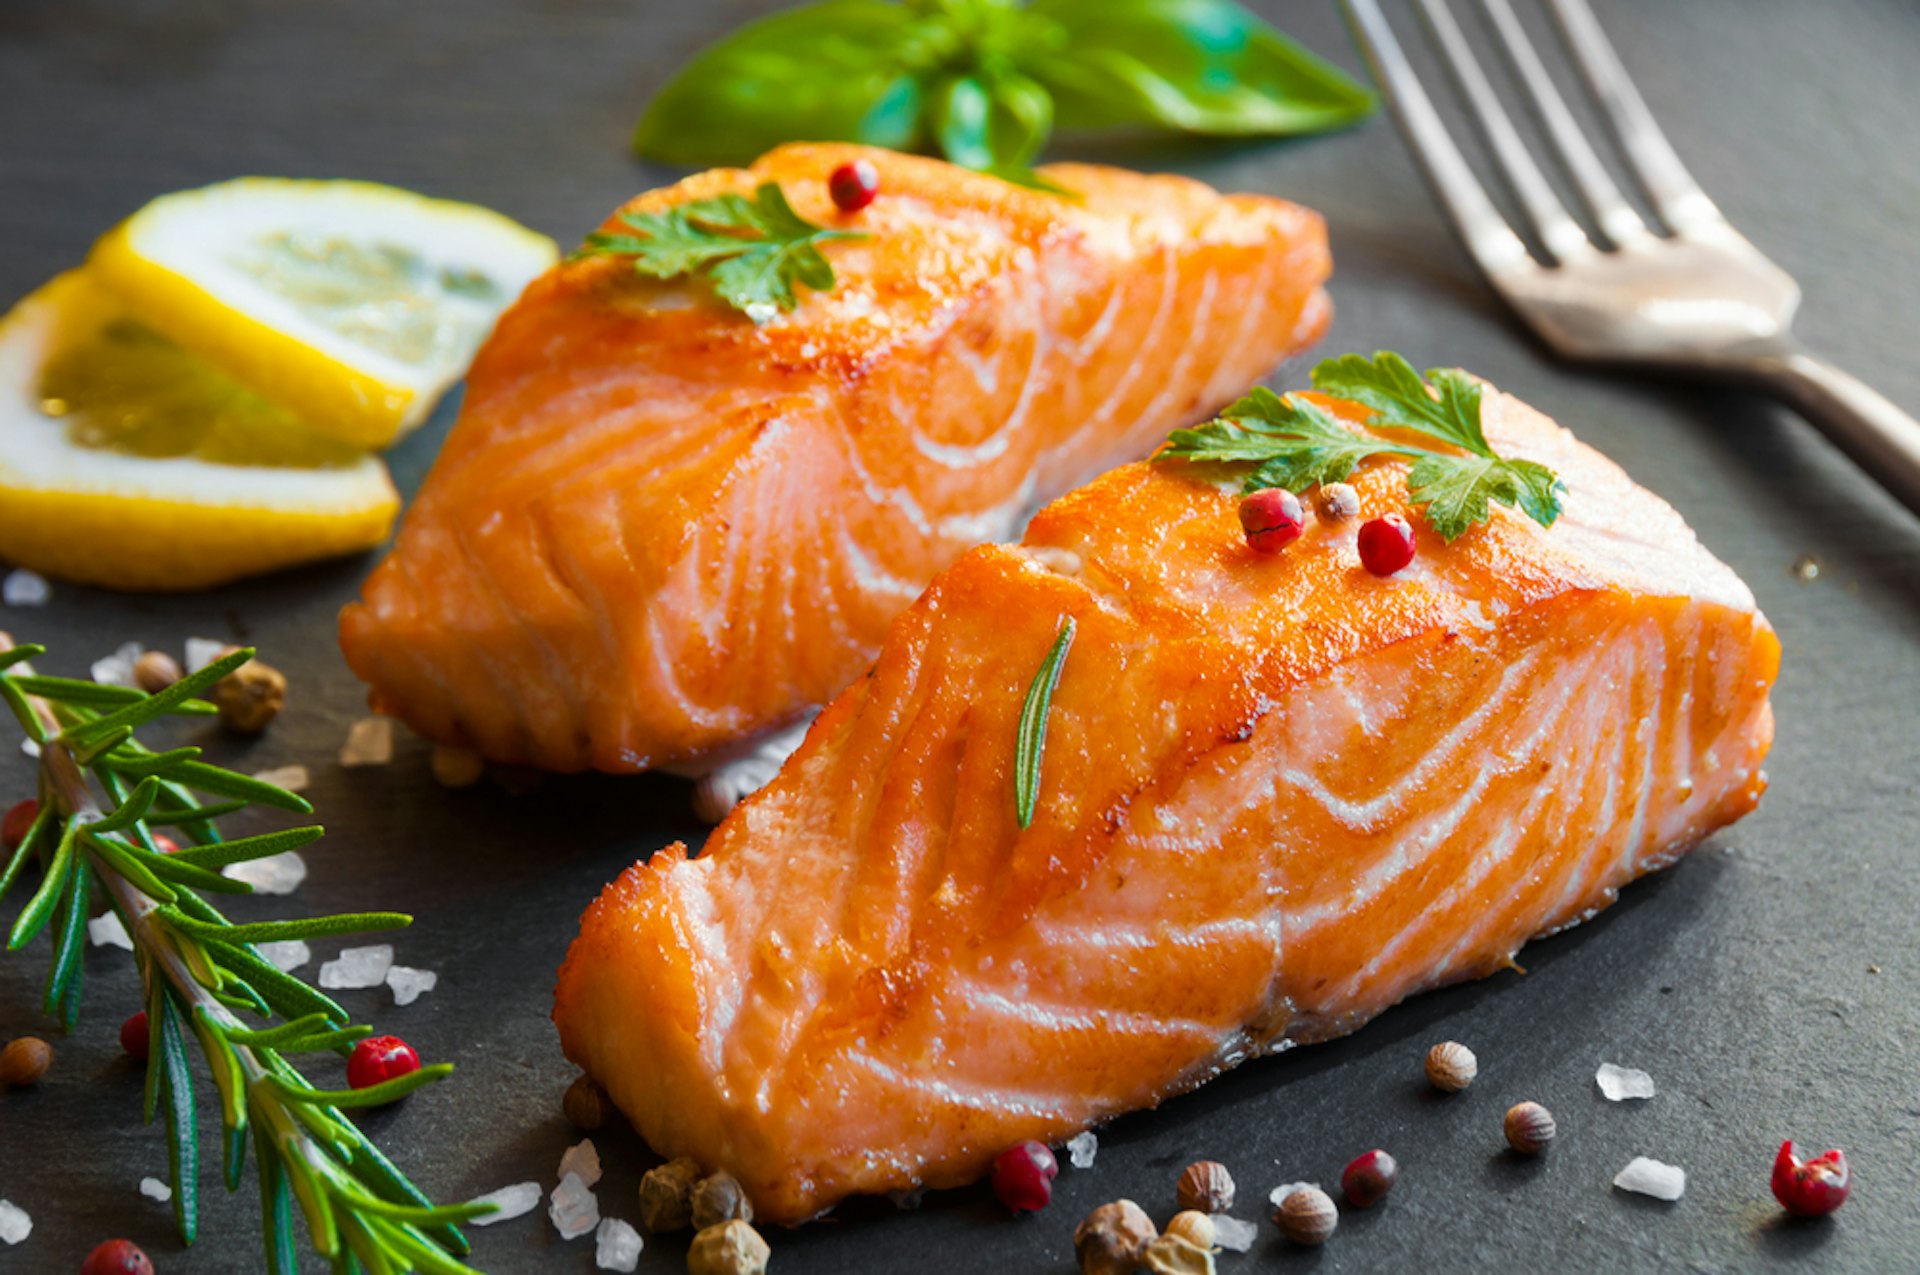 三文魚有豐富的omega-3脂肪酸